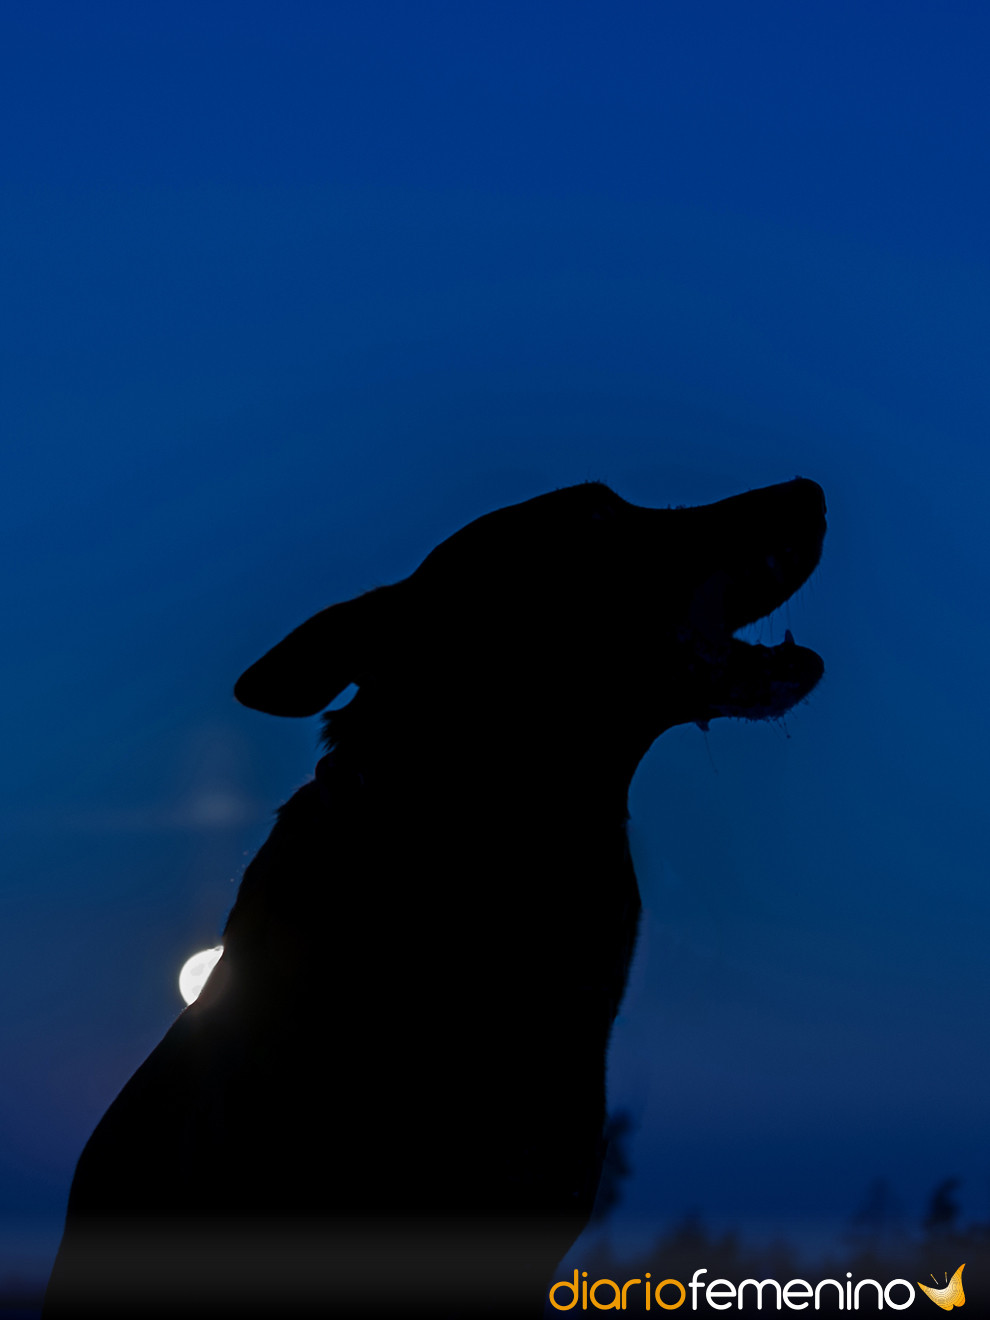 La leyenda de los perros negros (EFEM 4 Agosto) - Adelantos Digital